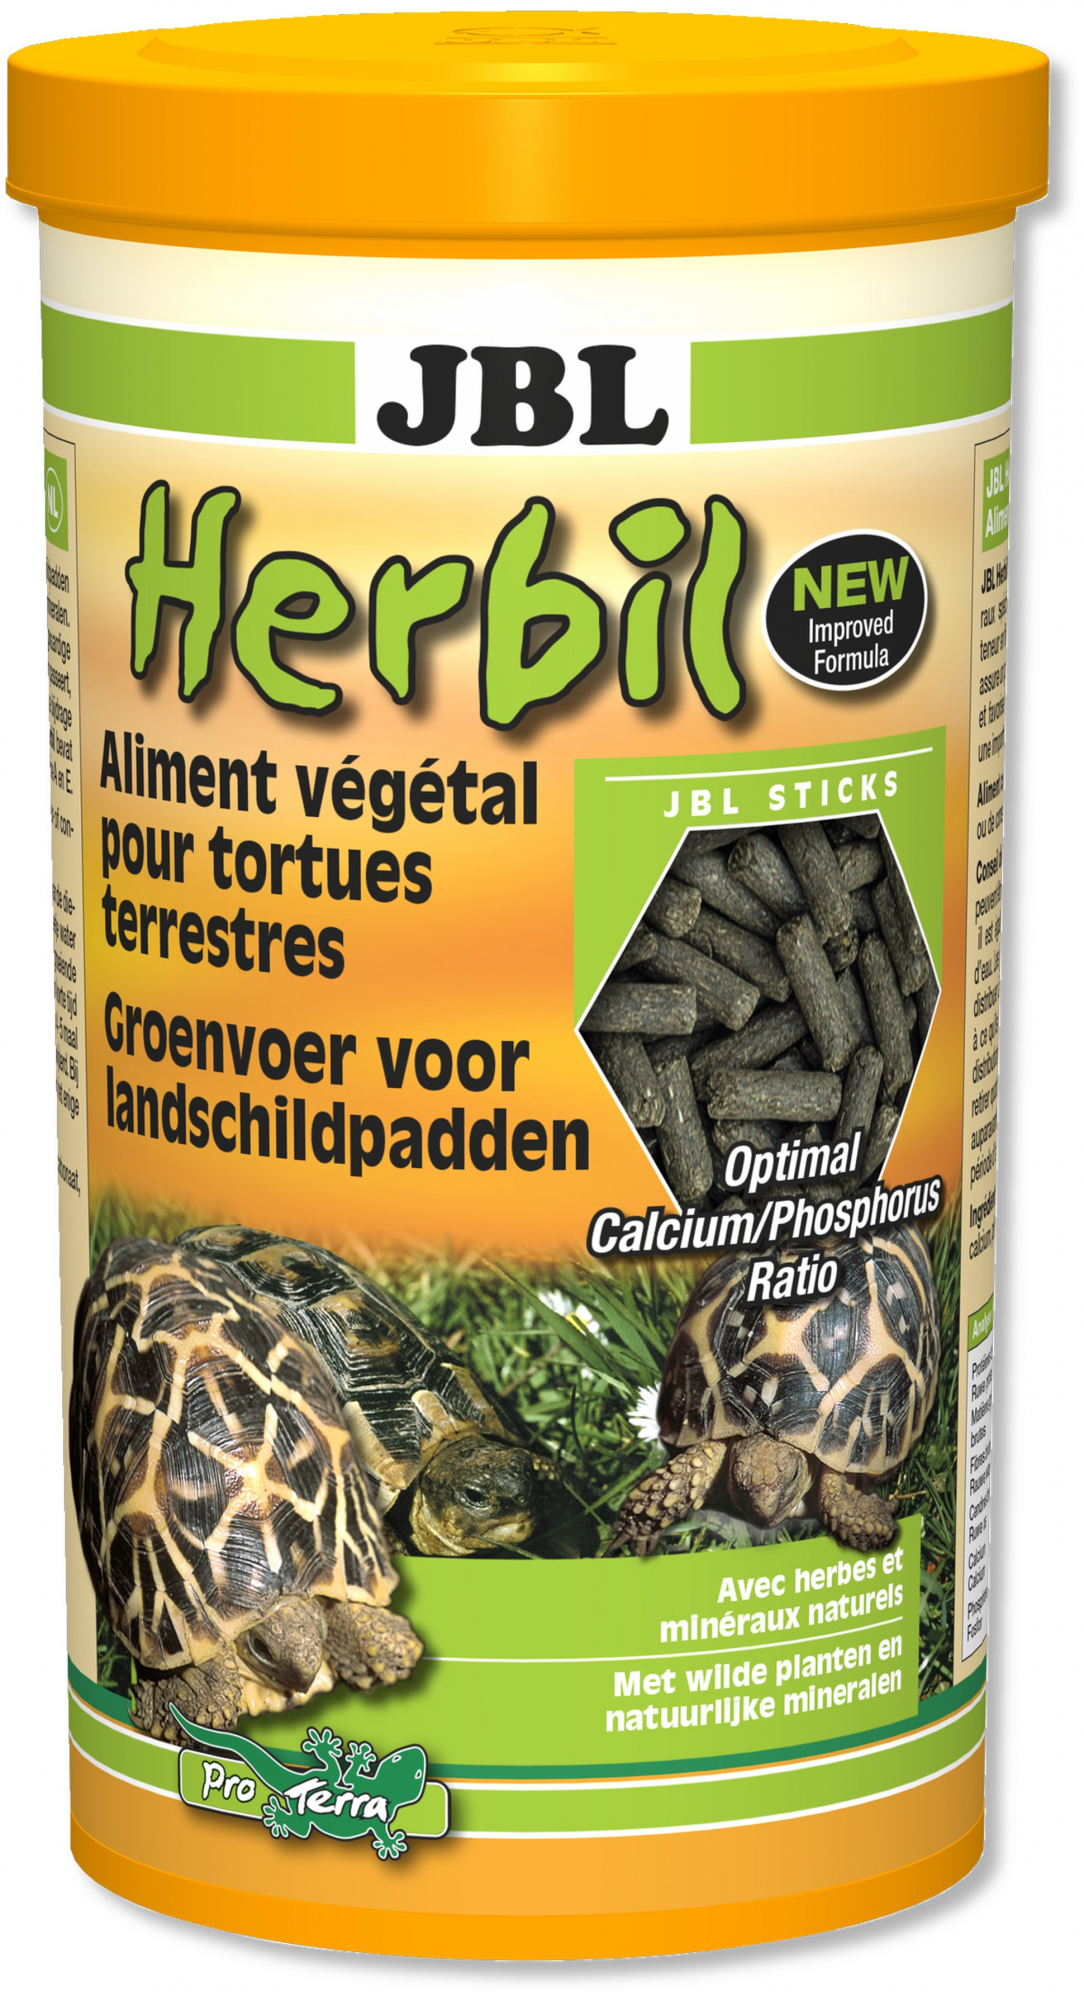 JBL Herbil Alimento completo para tortuga terrestre